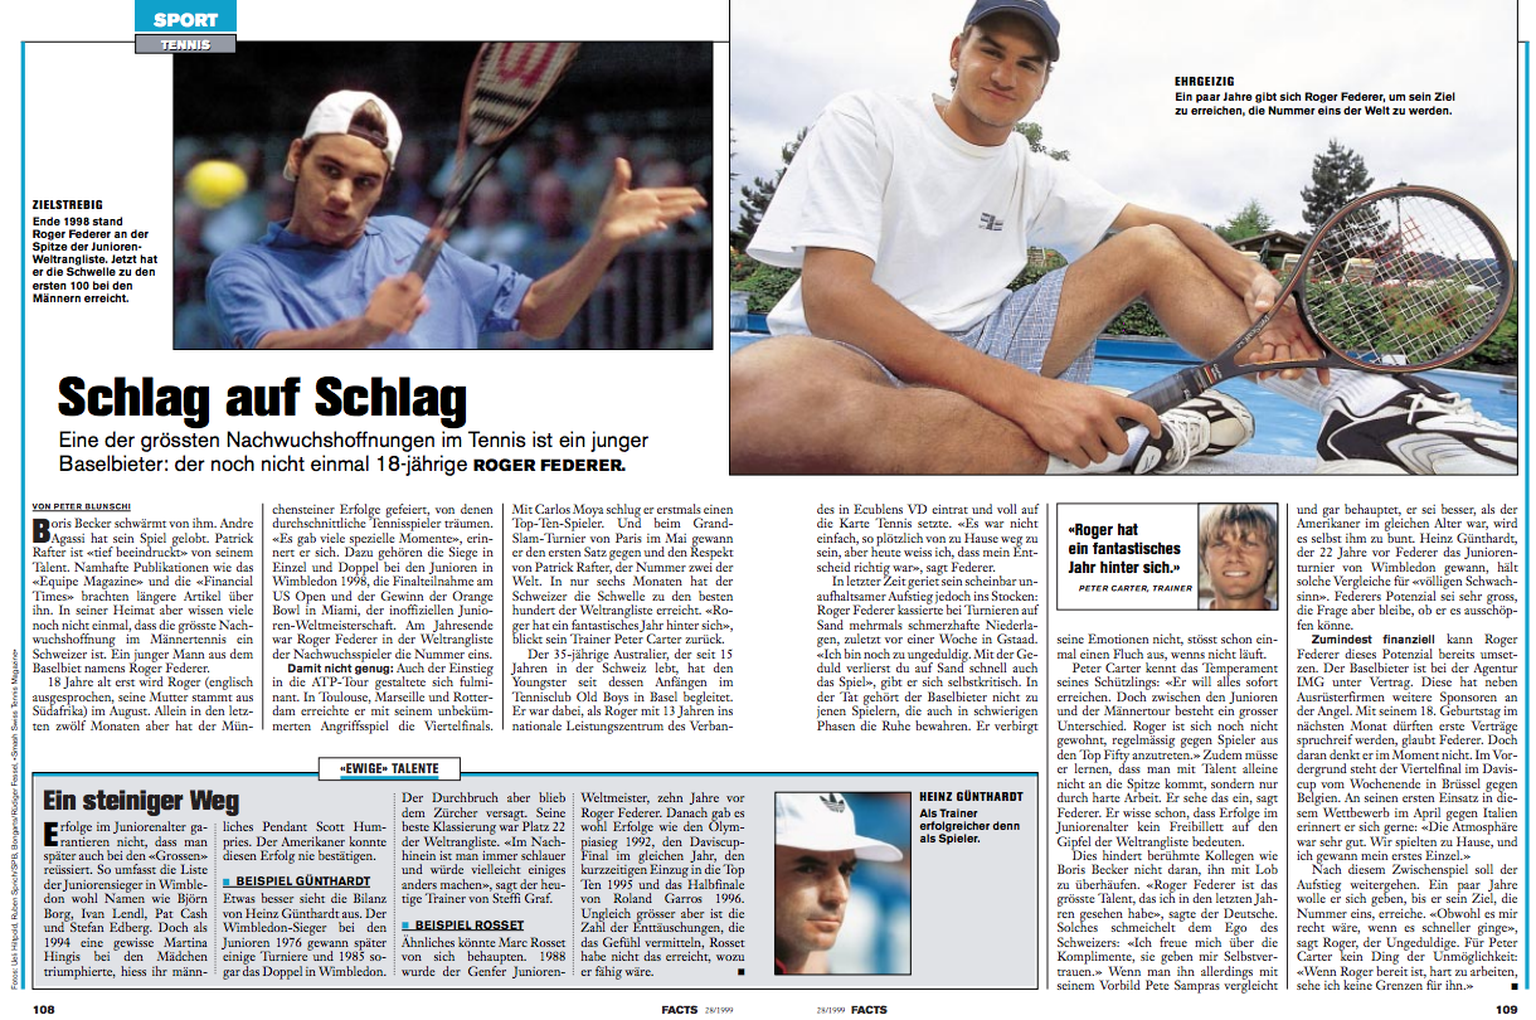 Blunschis Reportage über den aufstrebenden Federer.<br data-editable="remove">